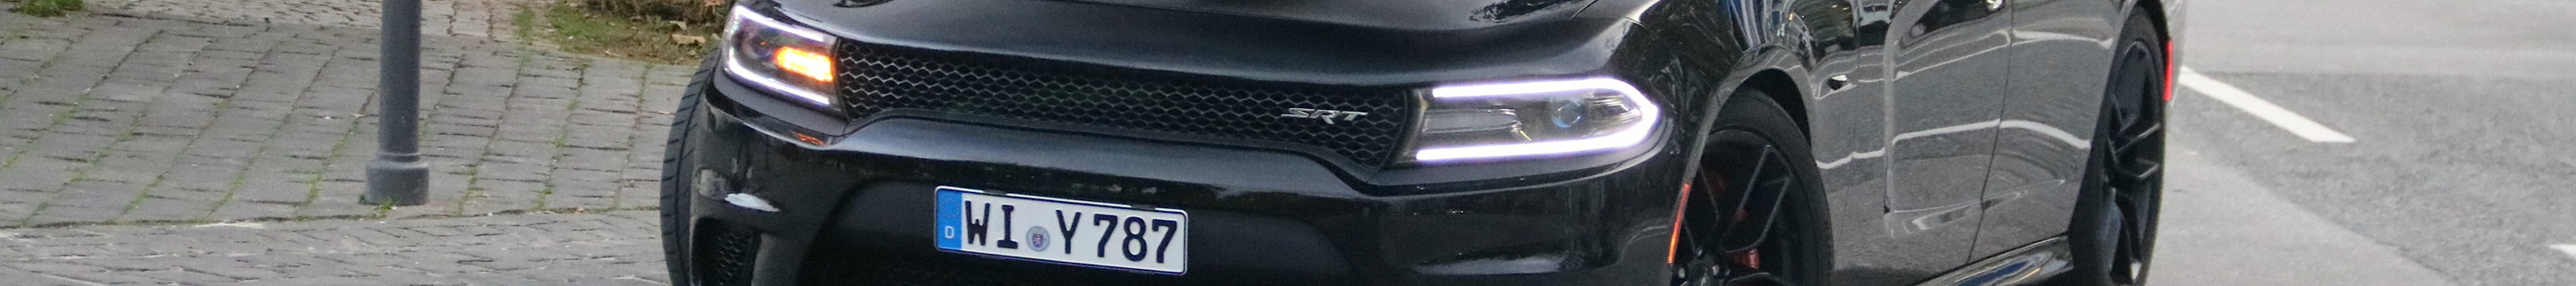 Dodge Charger SRT 392 2015